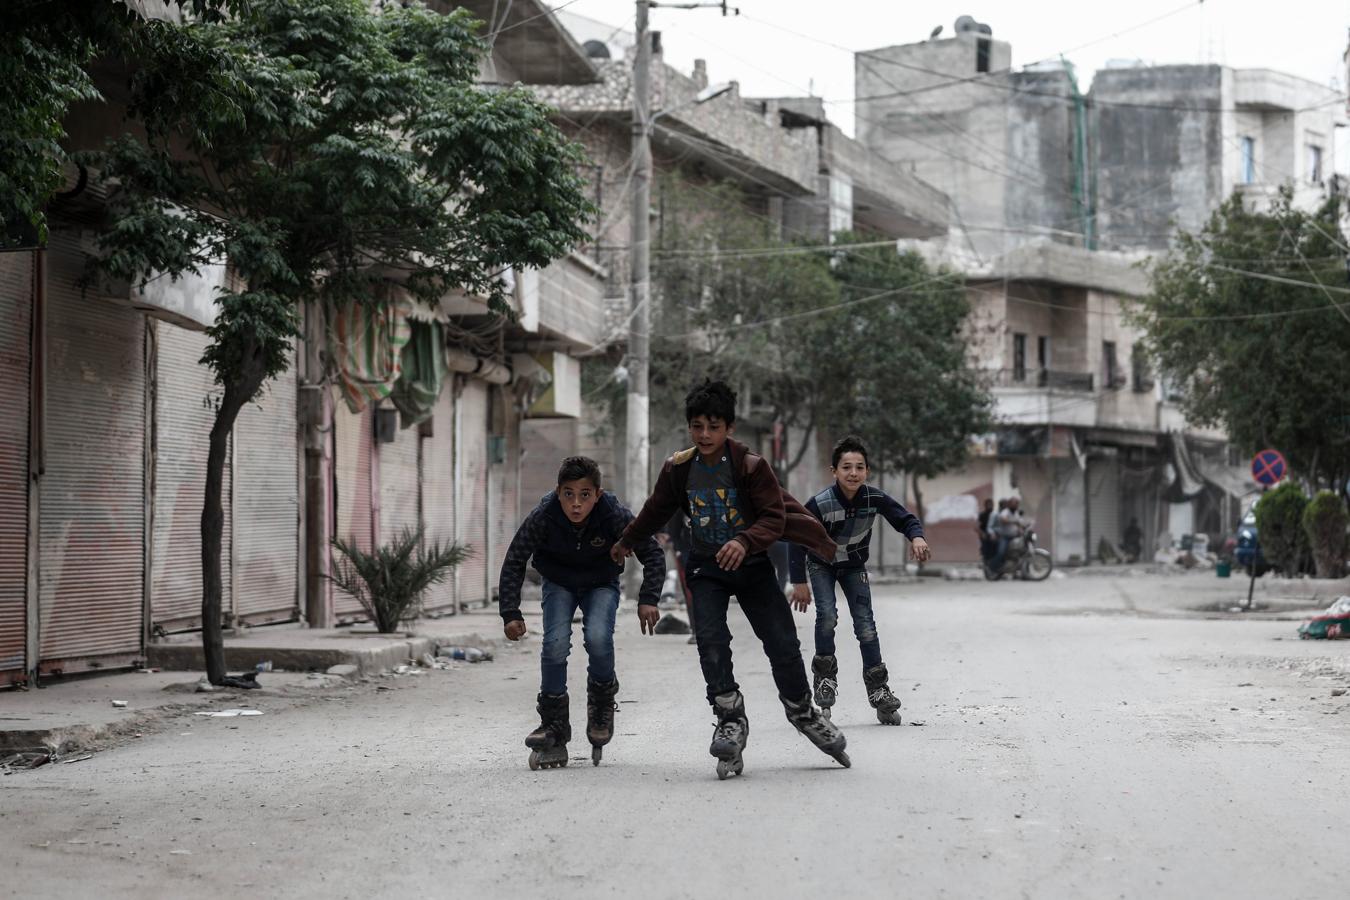 Cualquier lugar es bueno para divertirse, aunque la situación no acompañe. En las imágenes, un grupo de jóvenes sirios disfruta patinando.